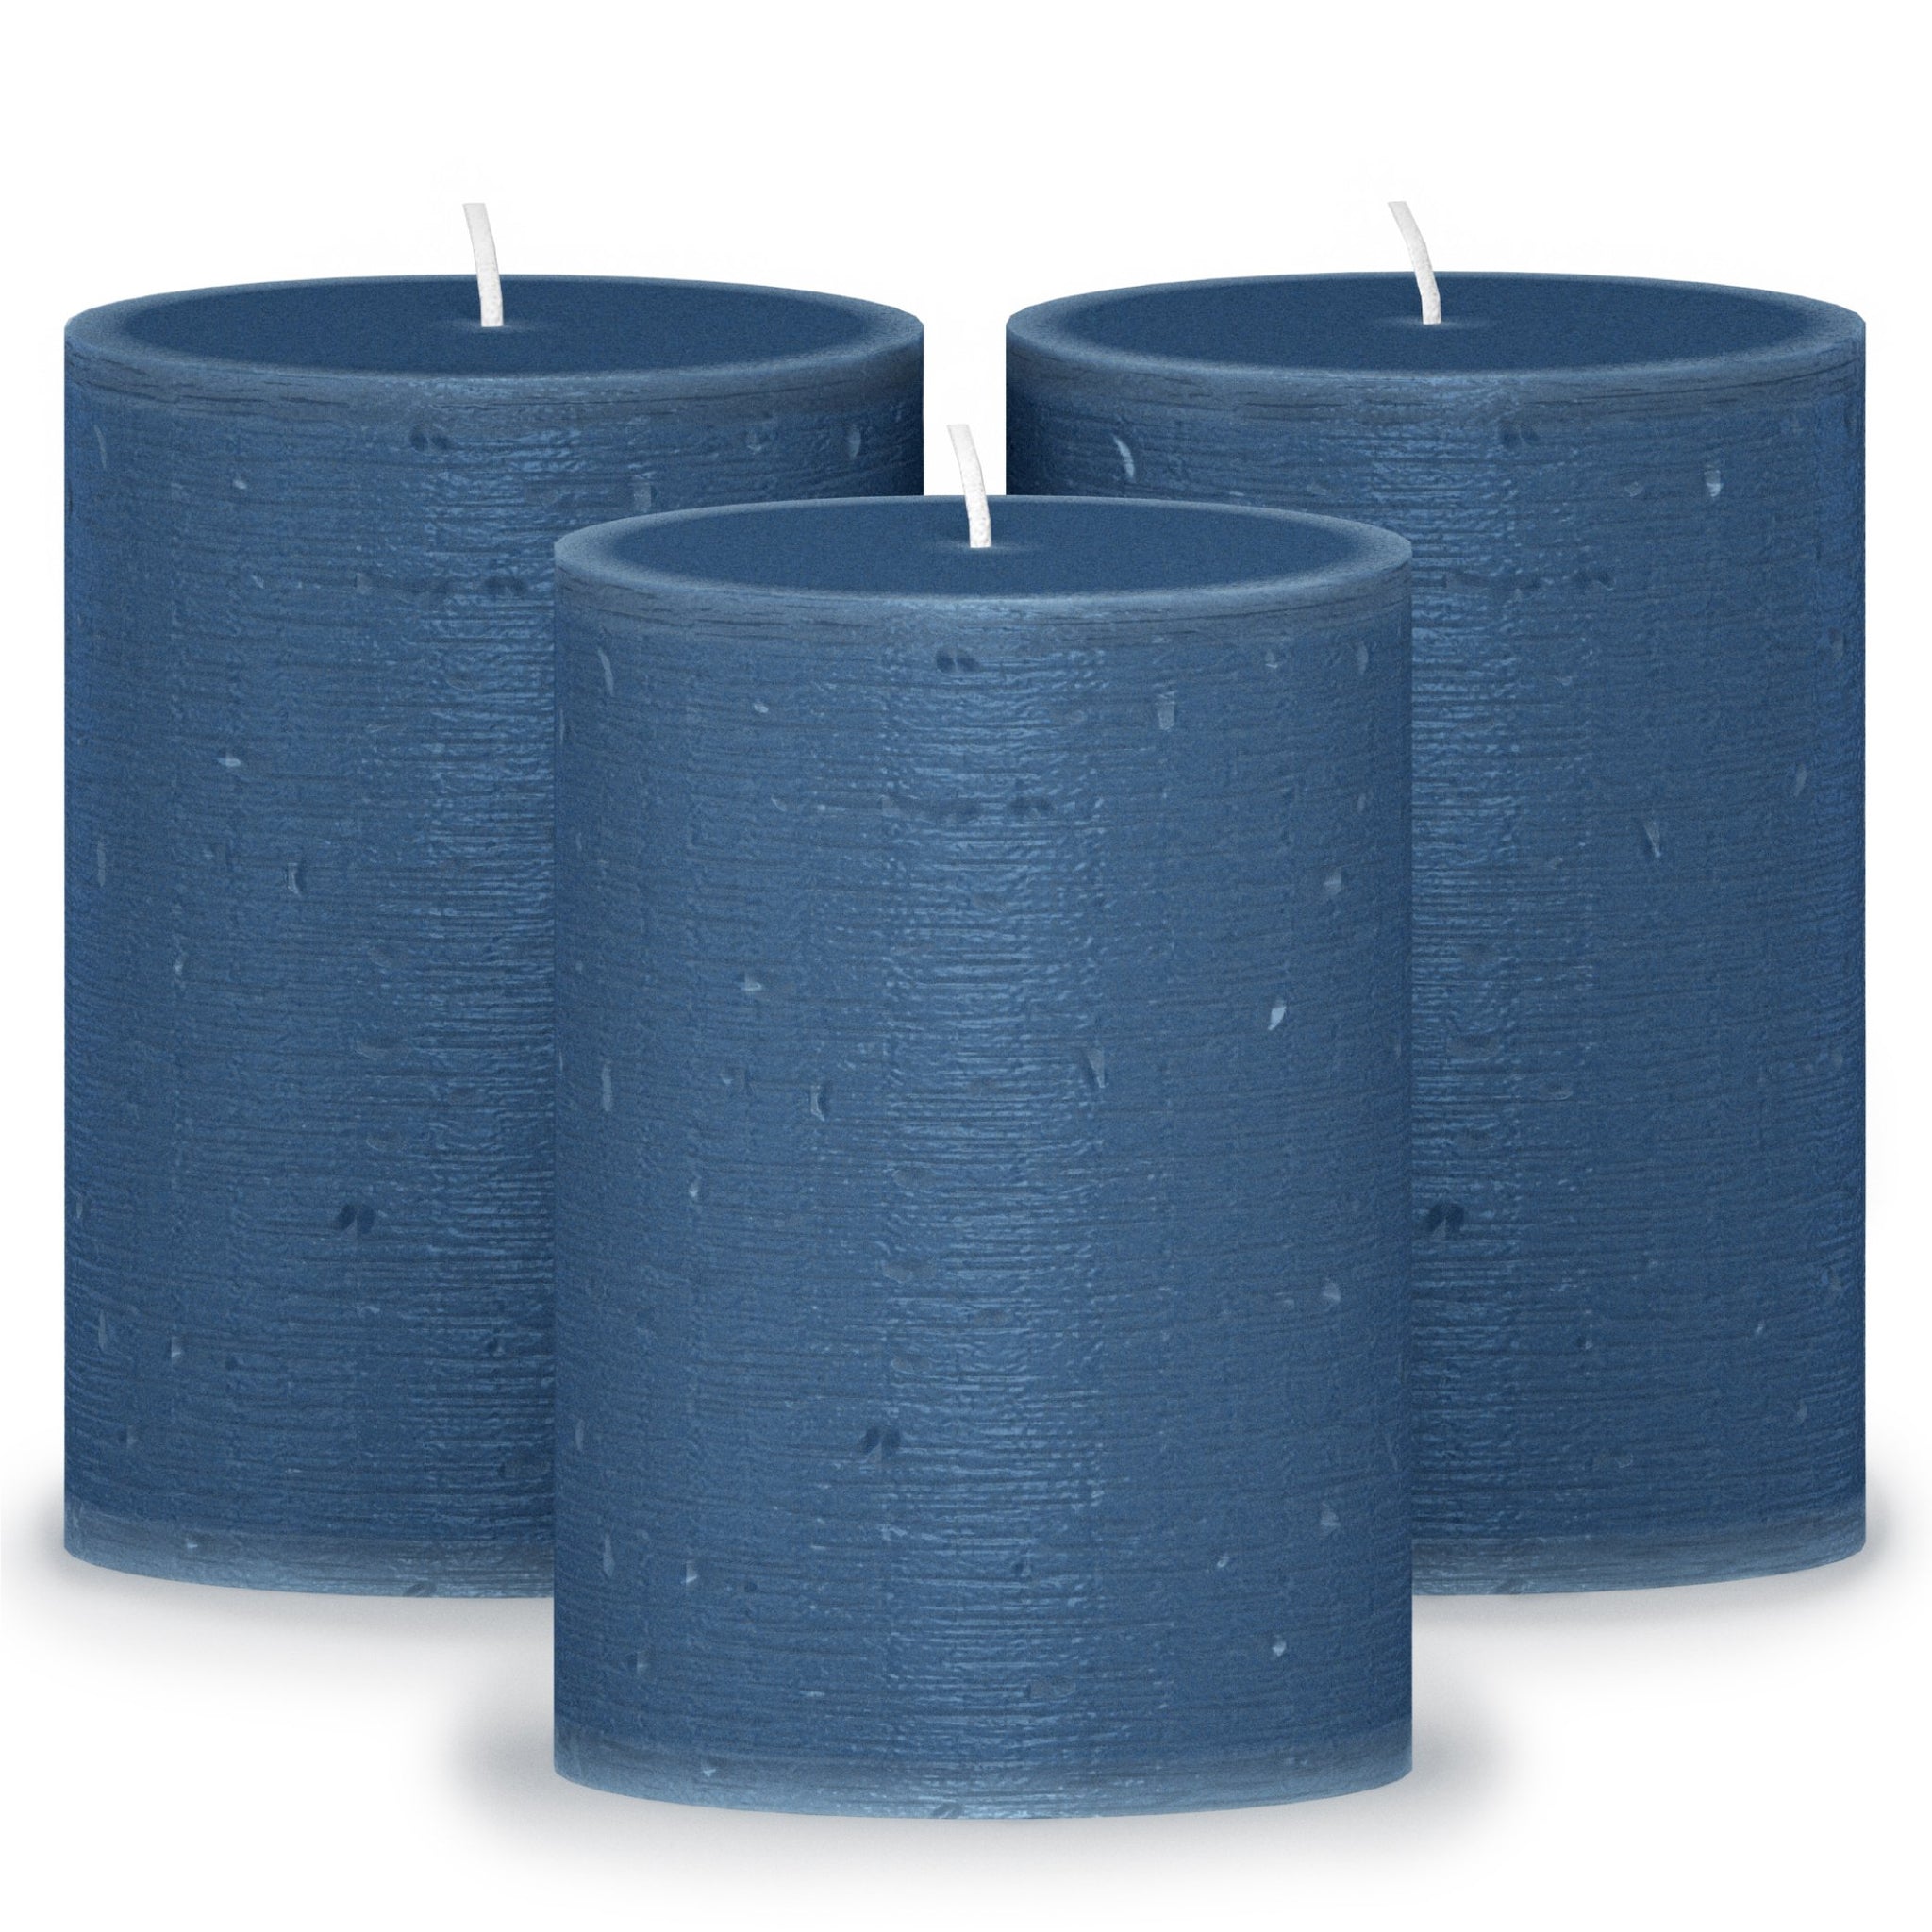 CANDWAX Dark Blue Pillar Candles 4" - Set of 3pcs